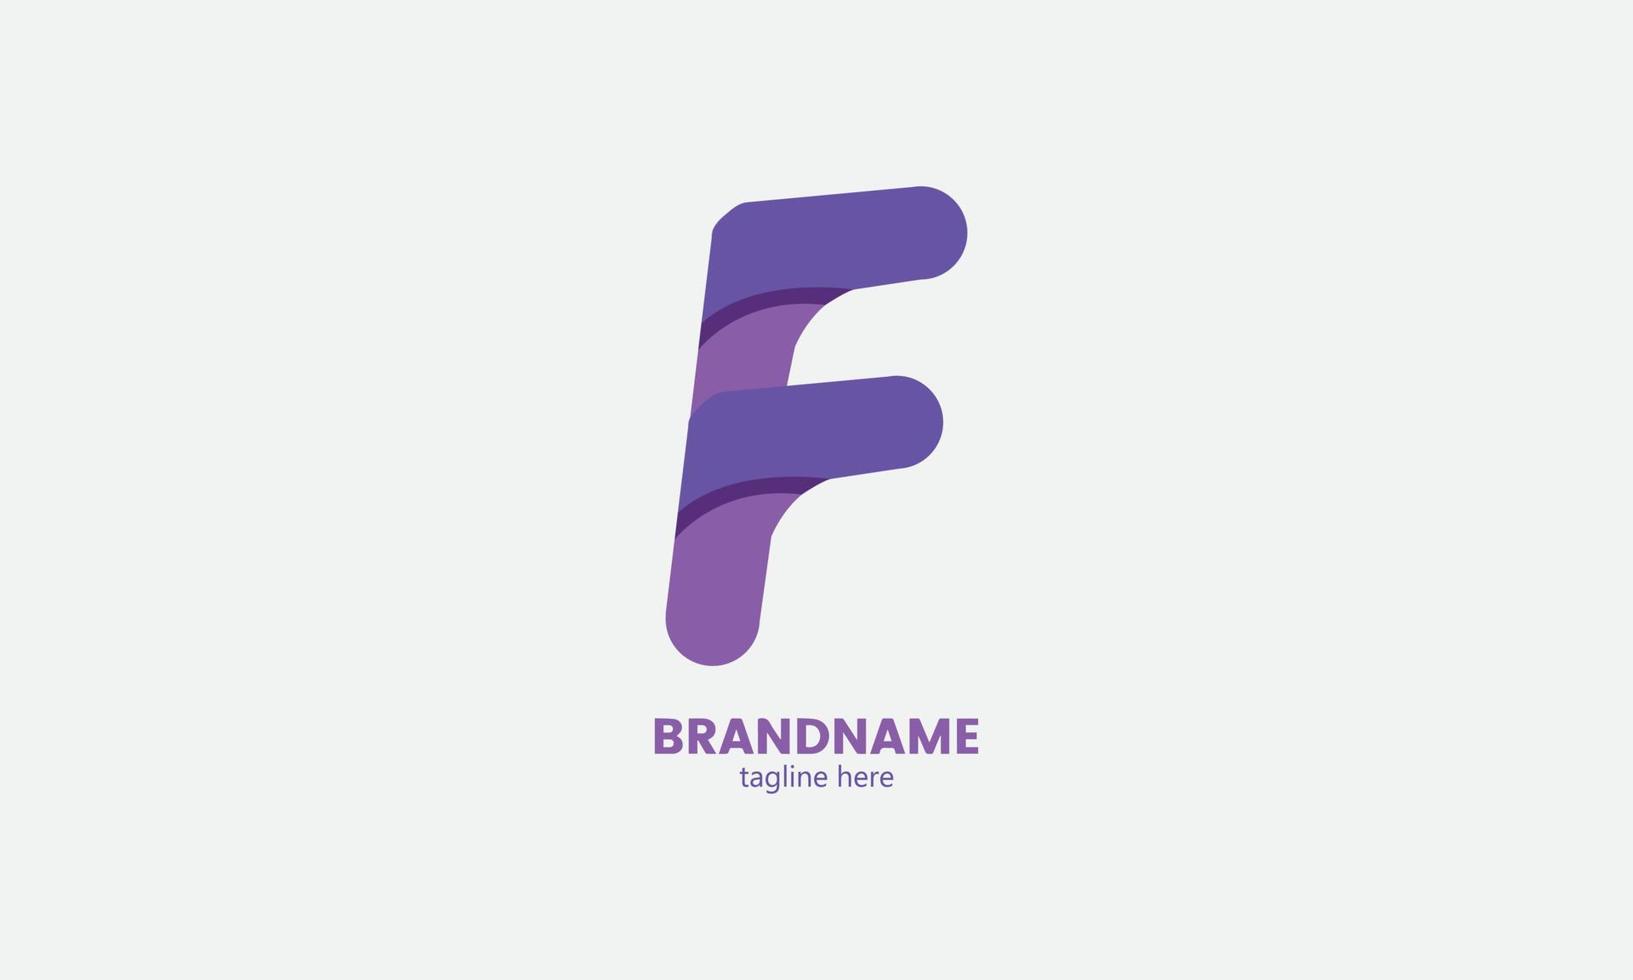 elementos de modelo de design de ícone de logotipo de letra f. ilustração em vetor de ícone abstrato com base na letra f. elementos de modelo de design de ícone de logotipo de letra f.